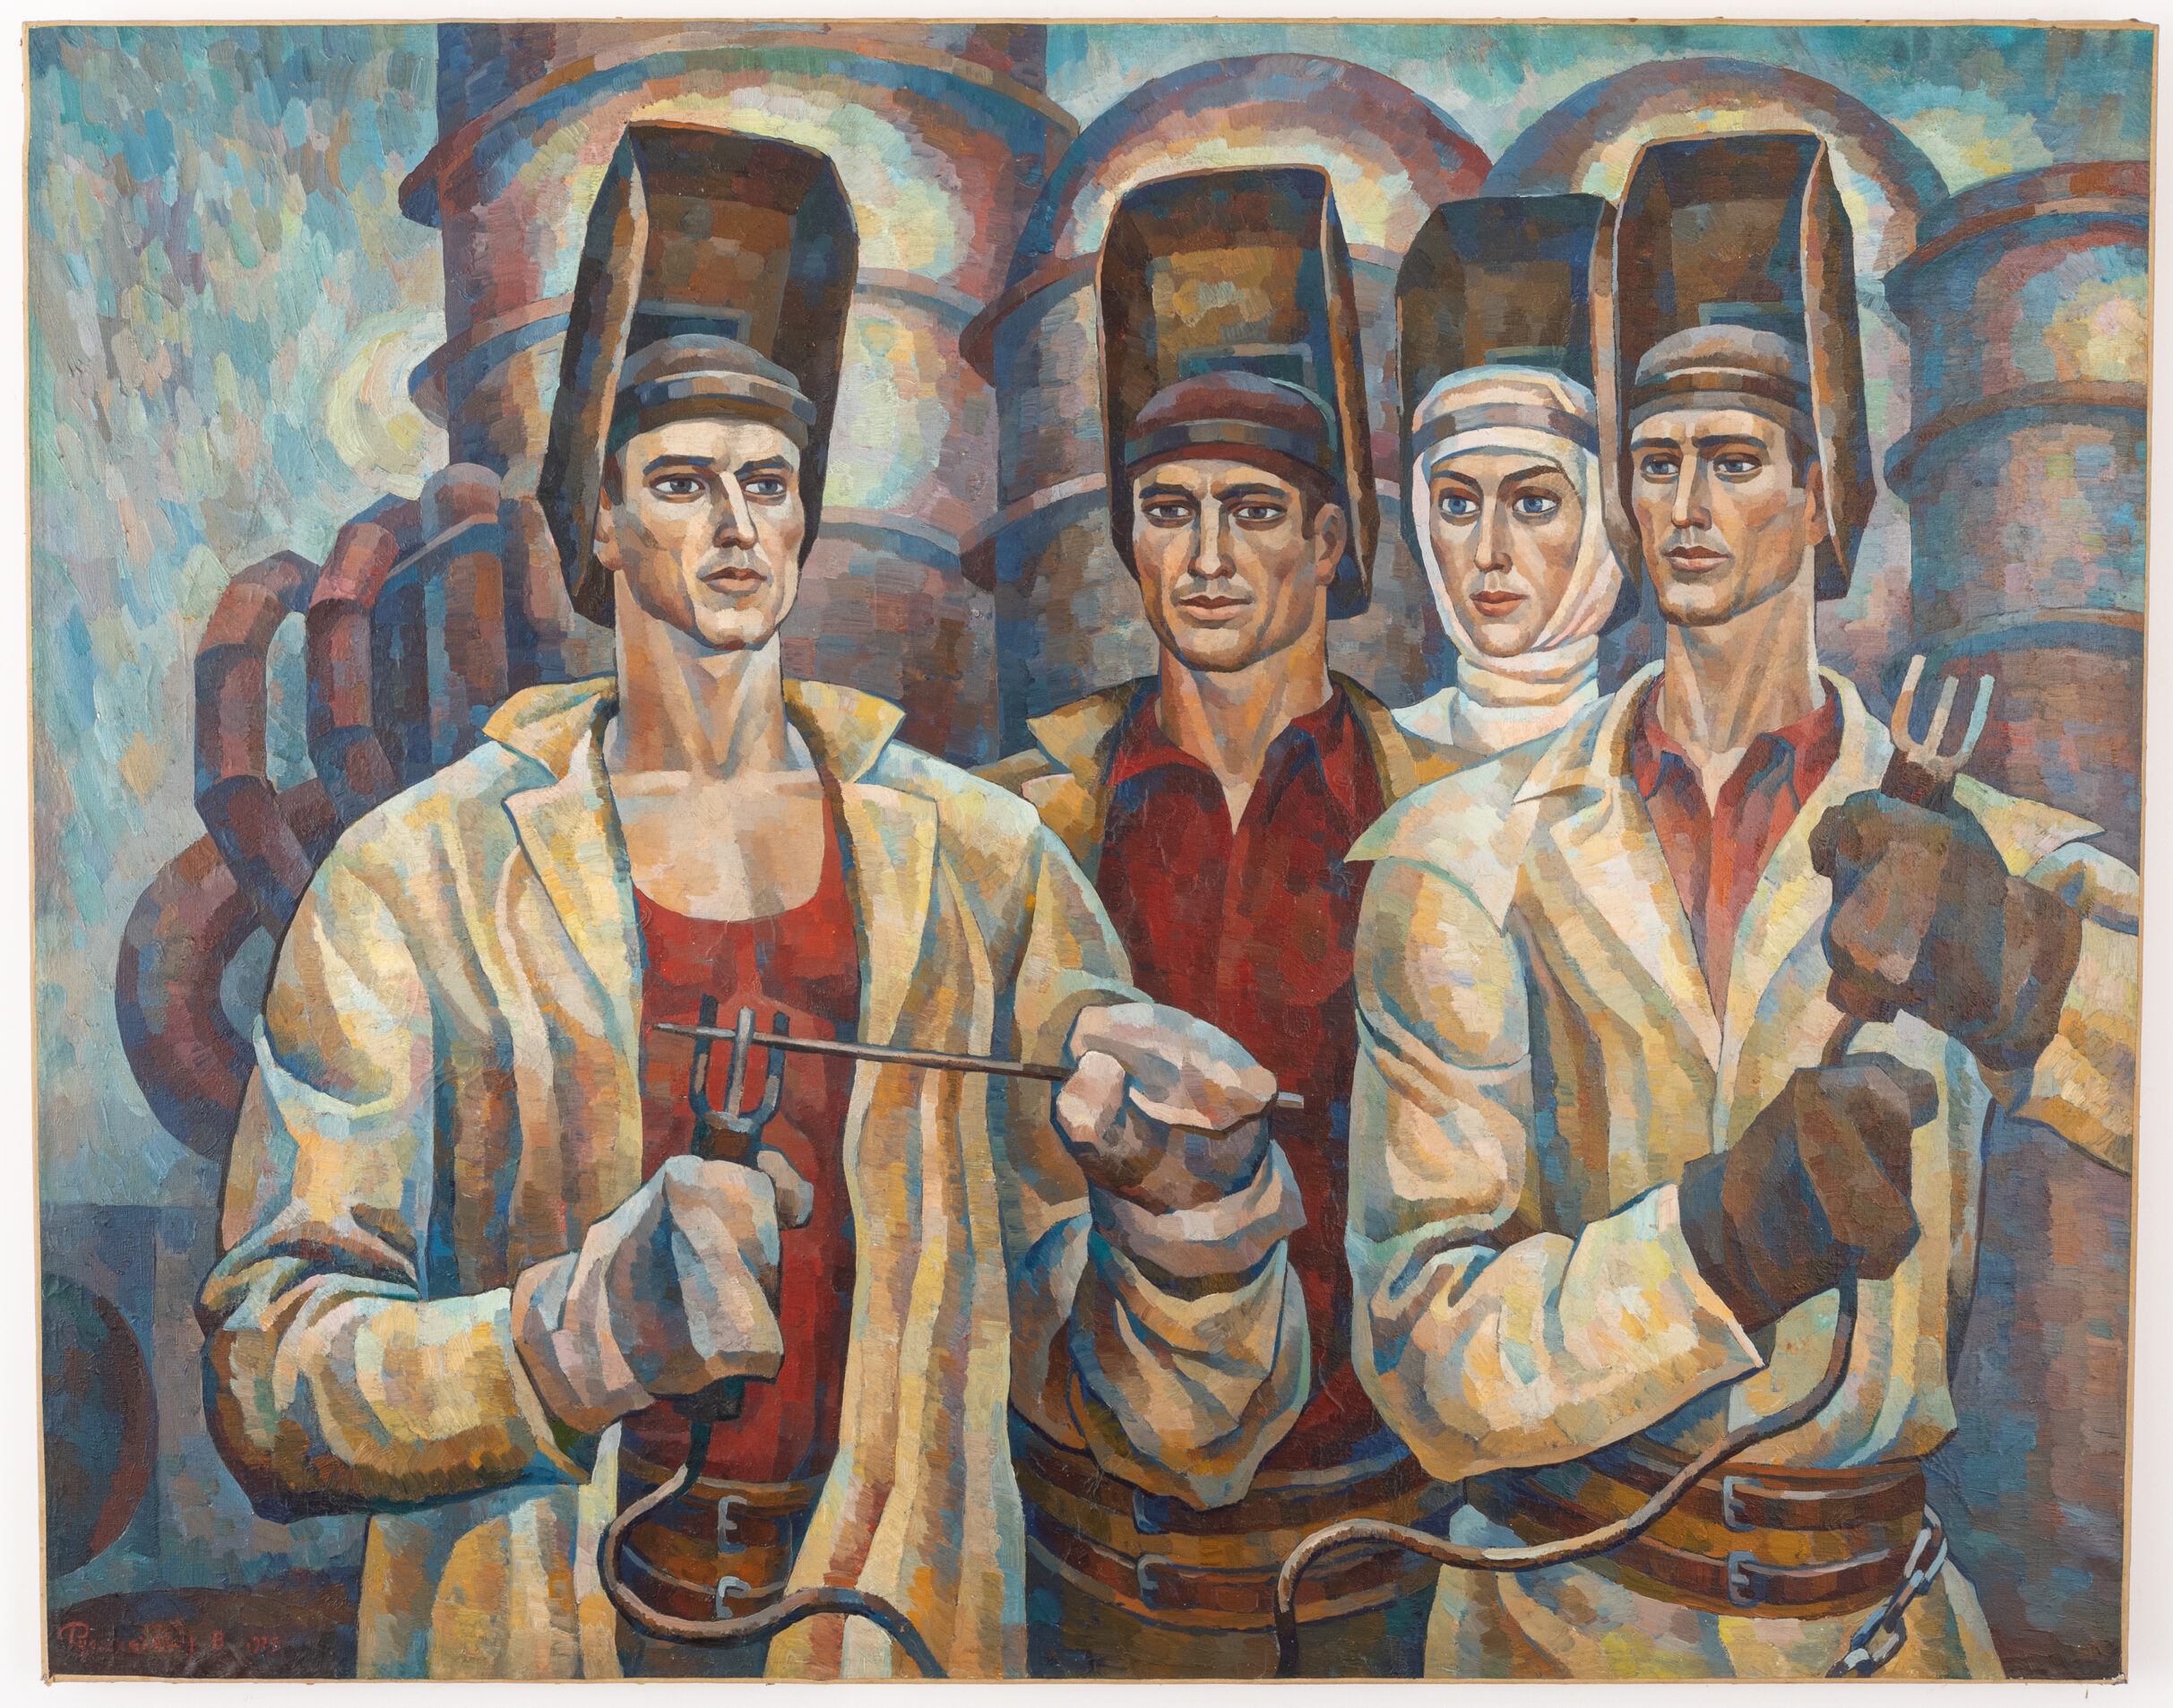 La pittura russa torna da Wannenes. E’ online l’asta sul “Realismo Sovietico”